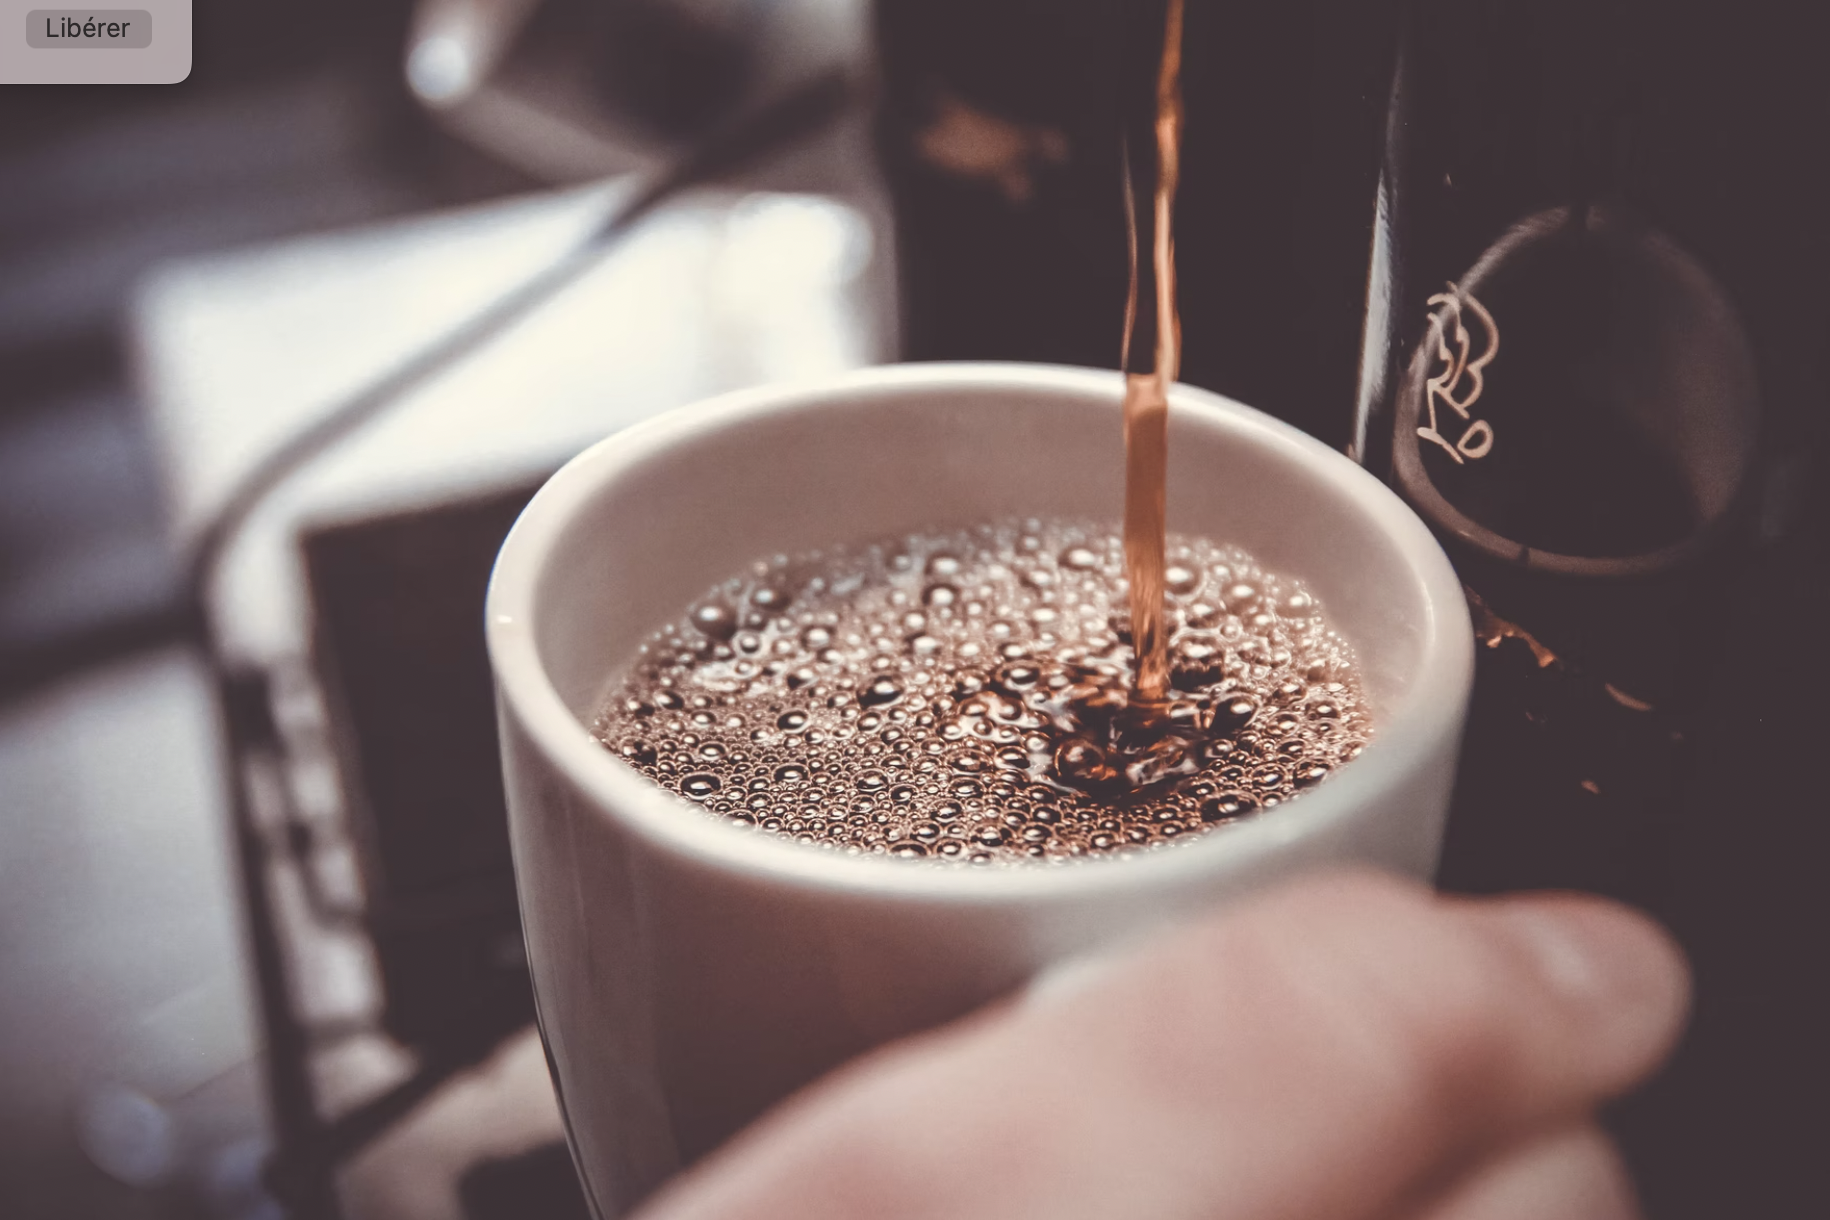 La caféine est-elle mauvaise pour nous? (et qu’elle est la dose à ne pas dépasser?)